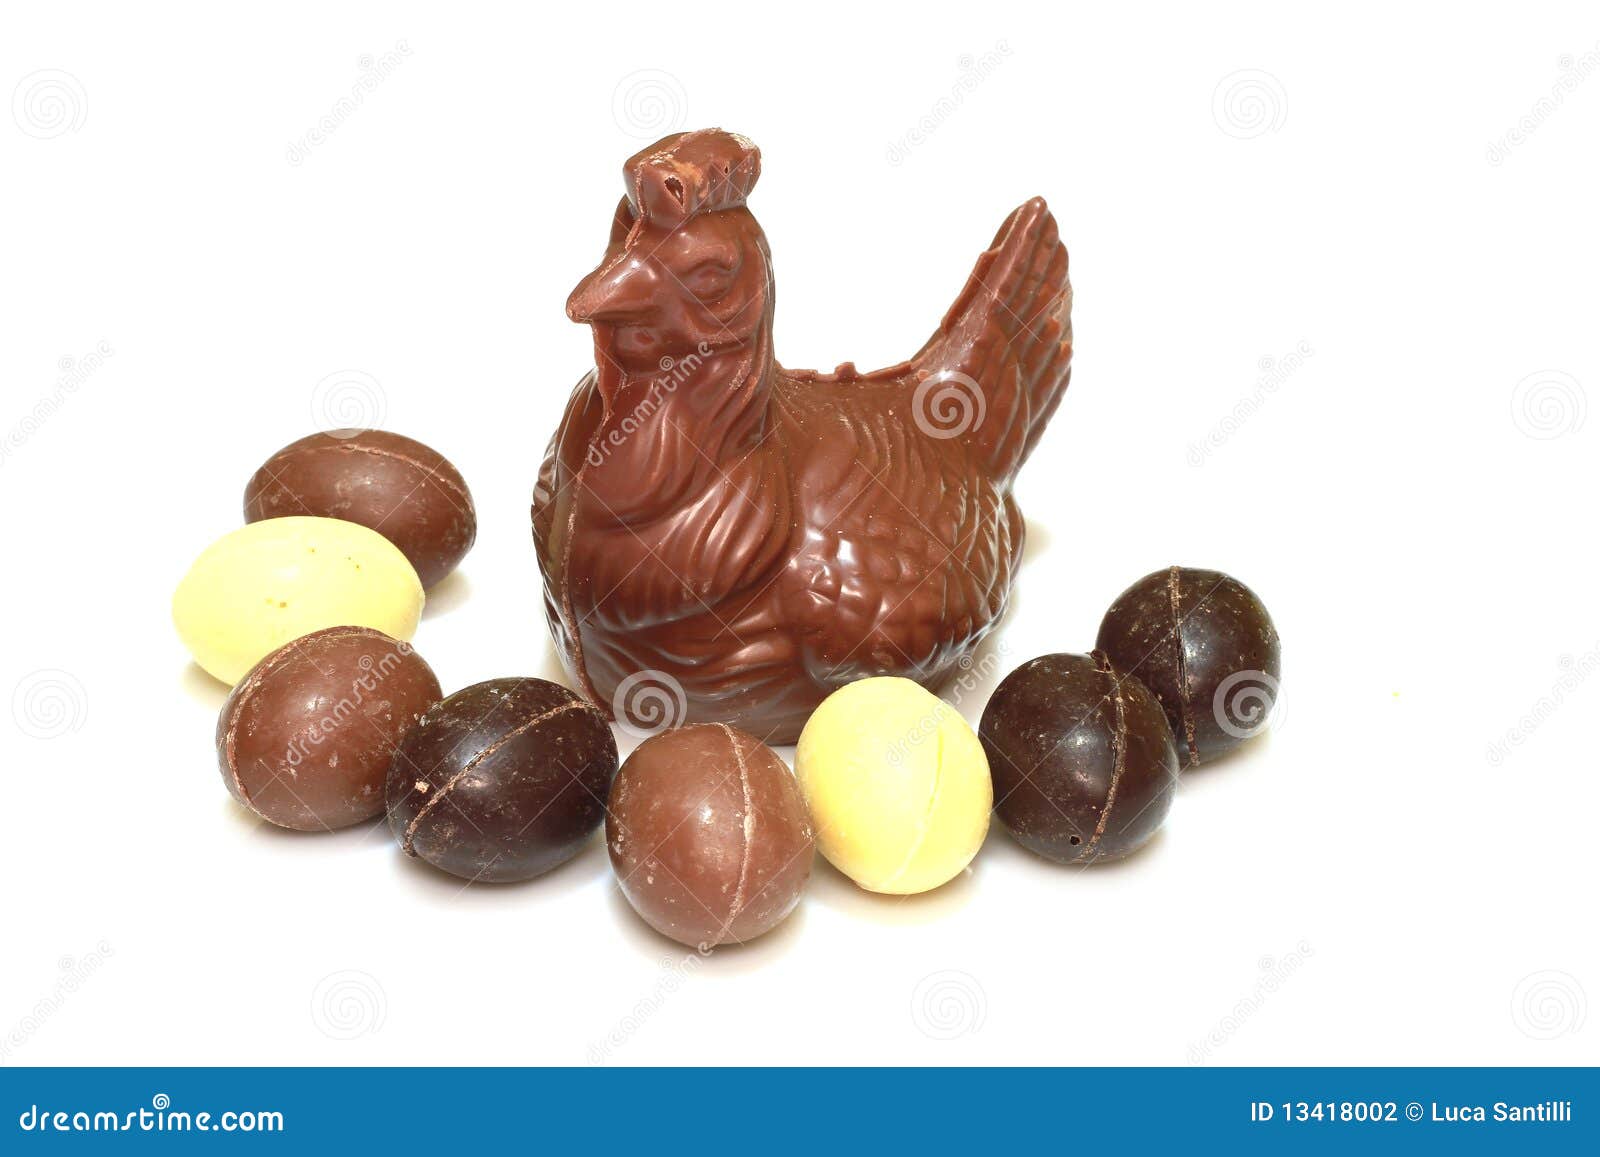 Глобус куры. Шоколадная курица. Шоколадная курица с яйцами. Пасхальный шоколадный цыплёнок. Куры с шоколадными яйцами.